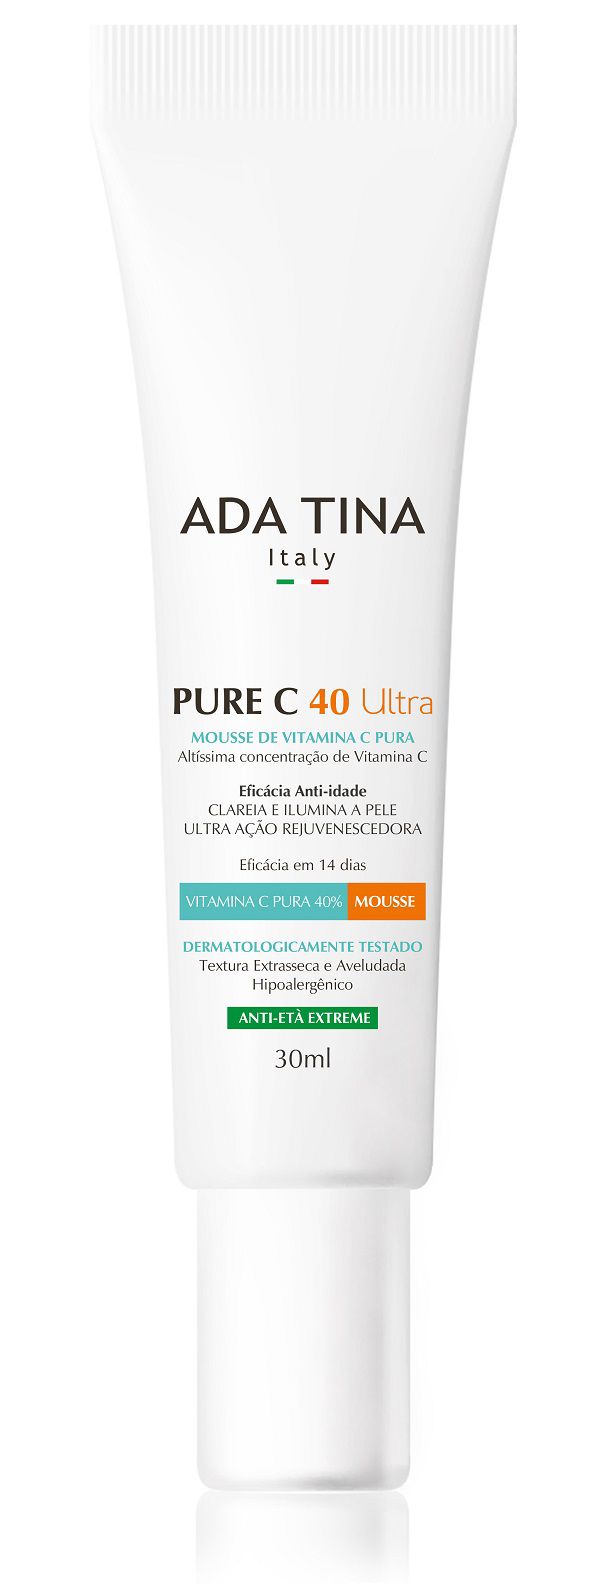 Pure C 40 Ultra - ADA TINA